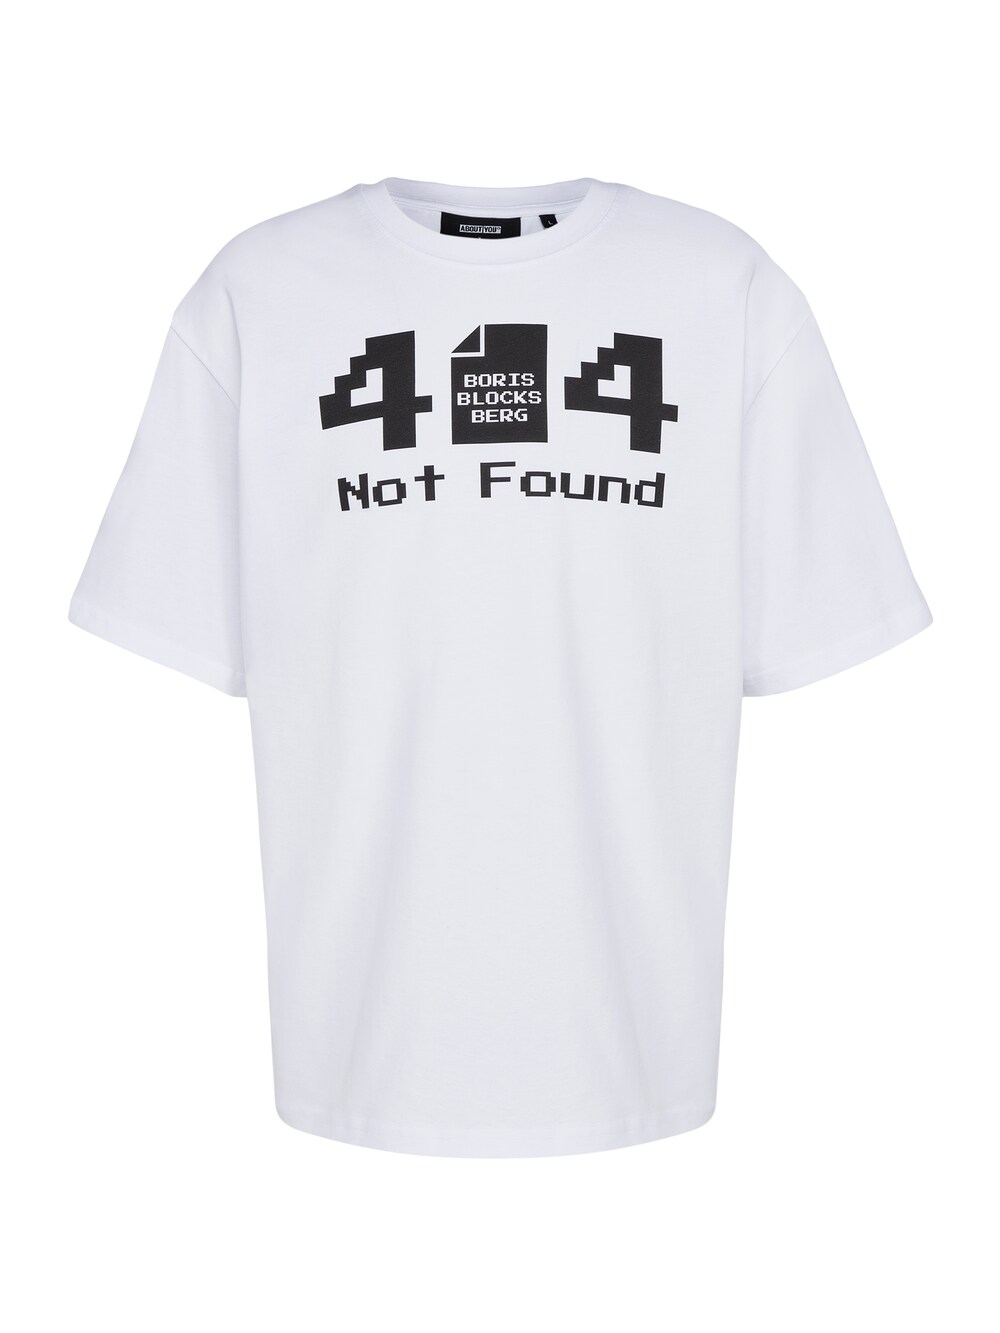 Рубашка About You 404 Boris, белый